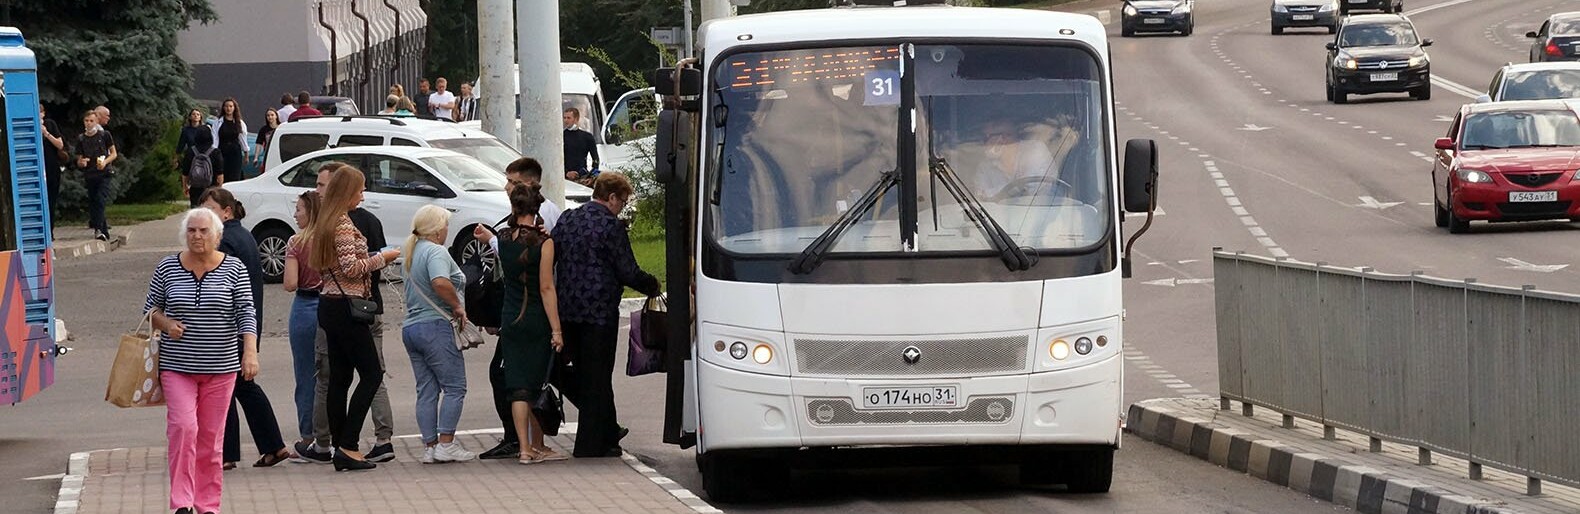 В ещё одном автобусе Белгорода карту придётся прикладывать два раза 